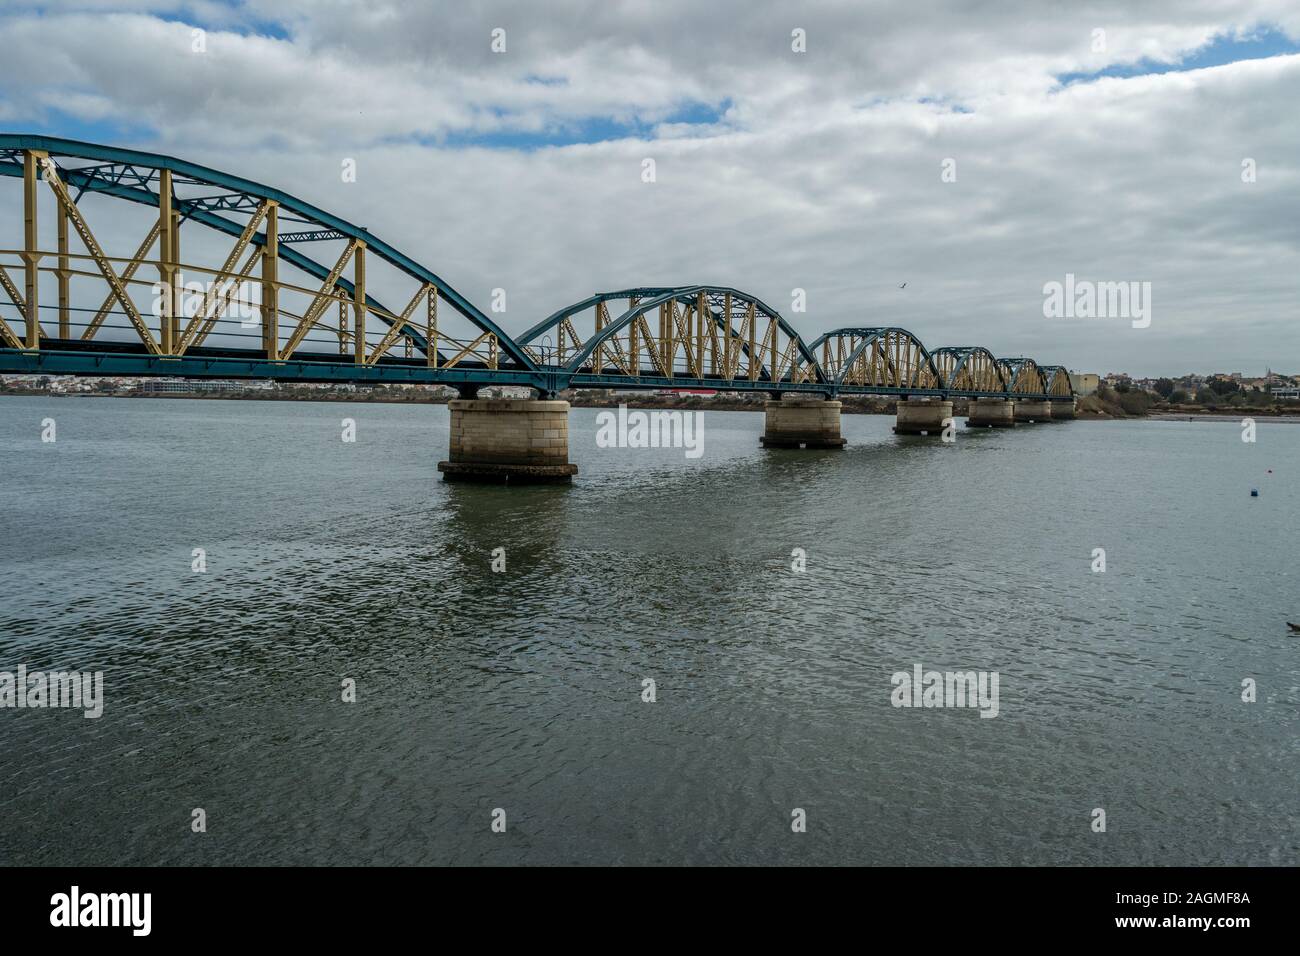 Rail bridge over the river in Portimao, Portugal Stock Photo